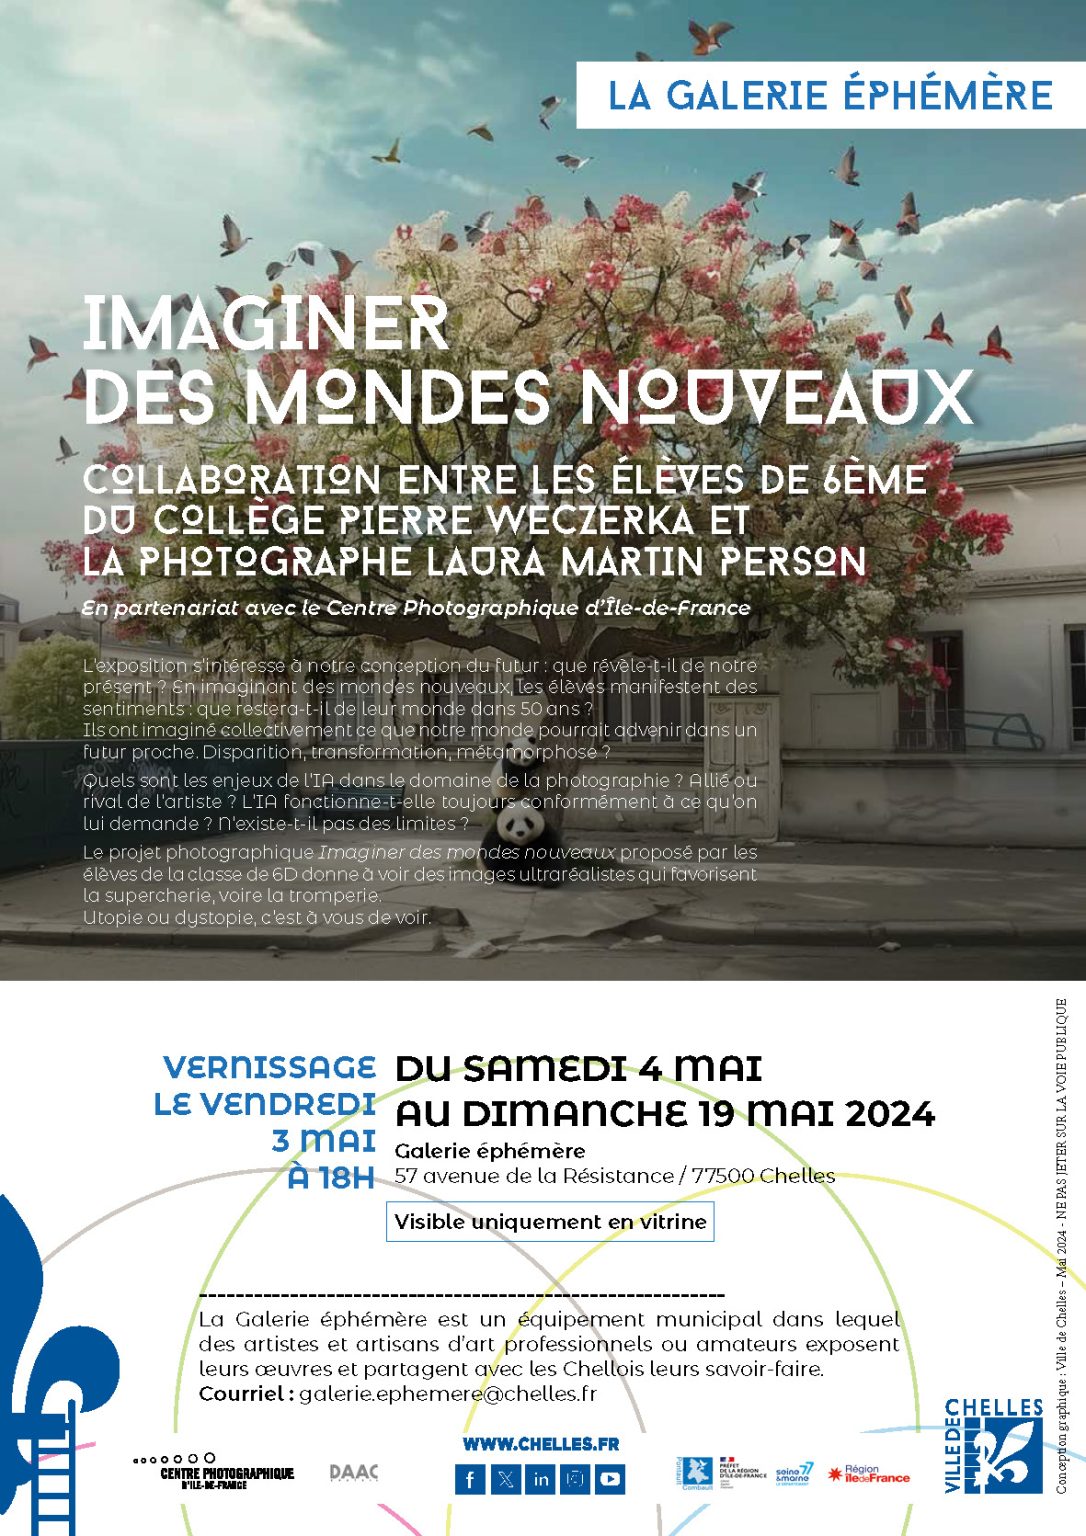 EXPOSITION_IMAGINER_DES_MONDES_NOUVEAUX_-_GALERIE_ÉPHÉMÈRE_2024_web